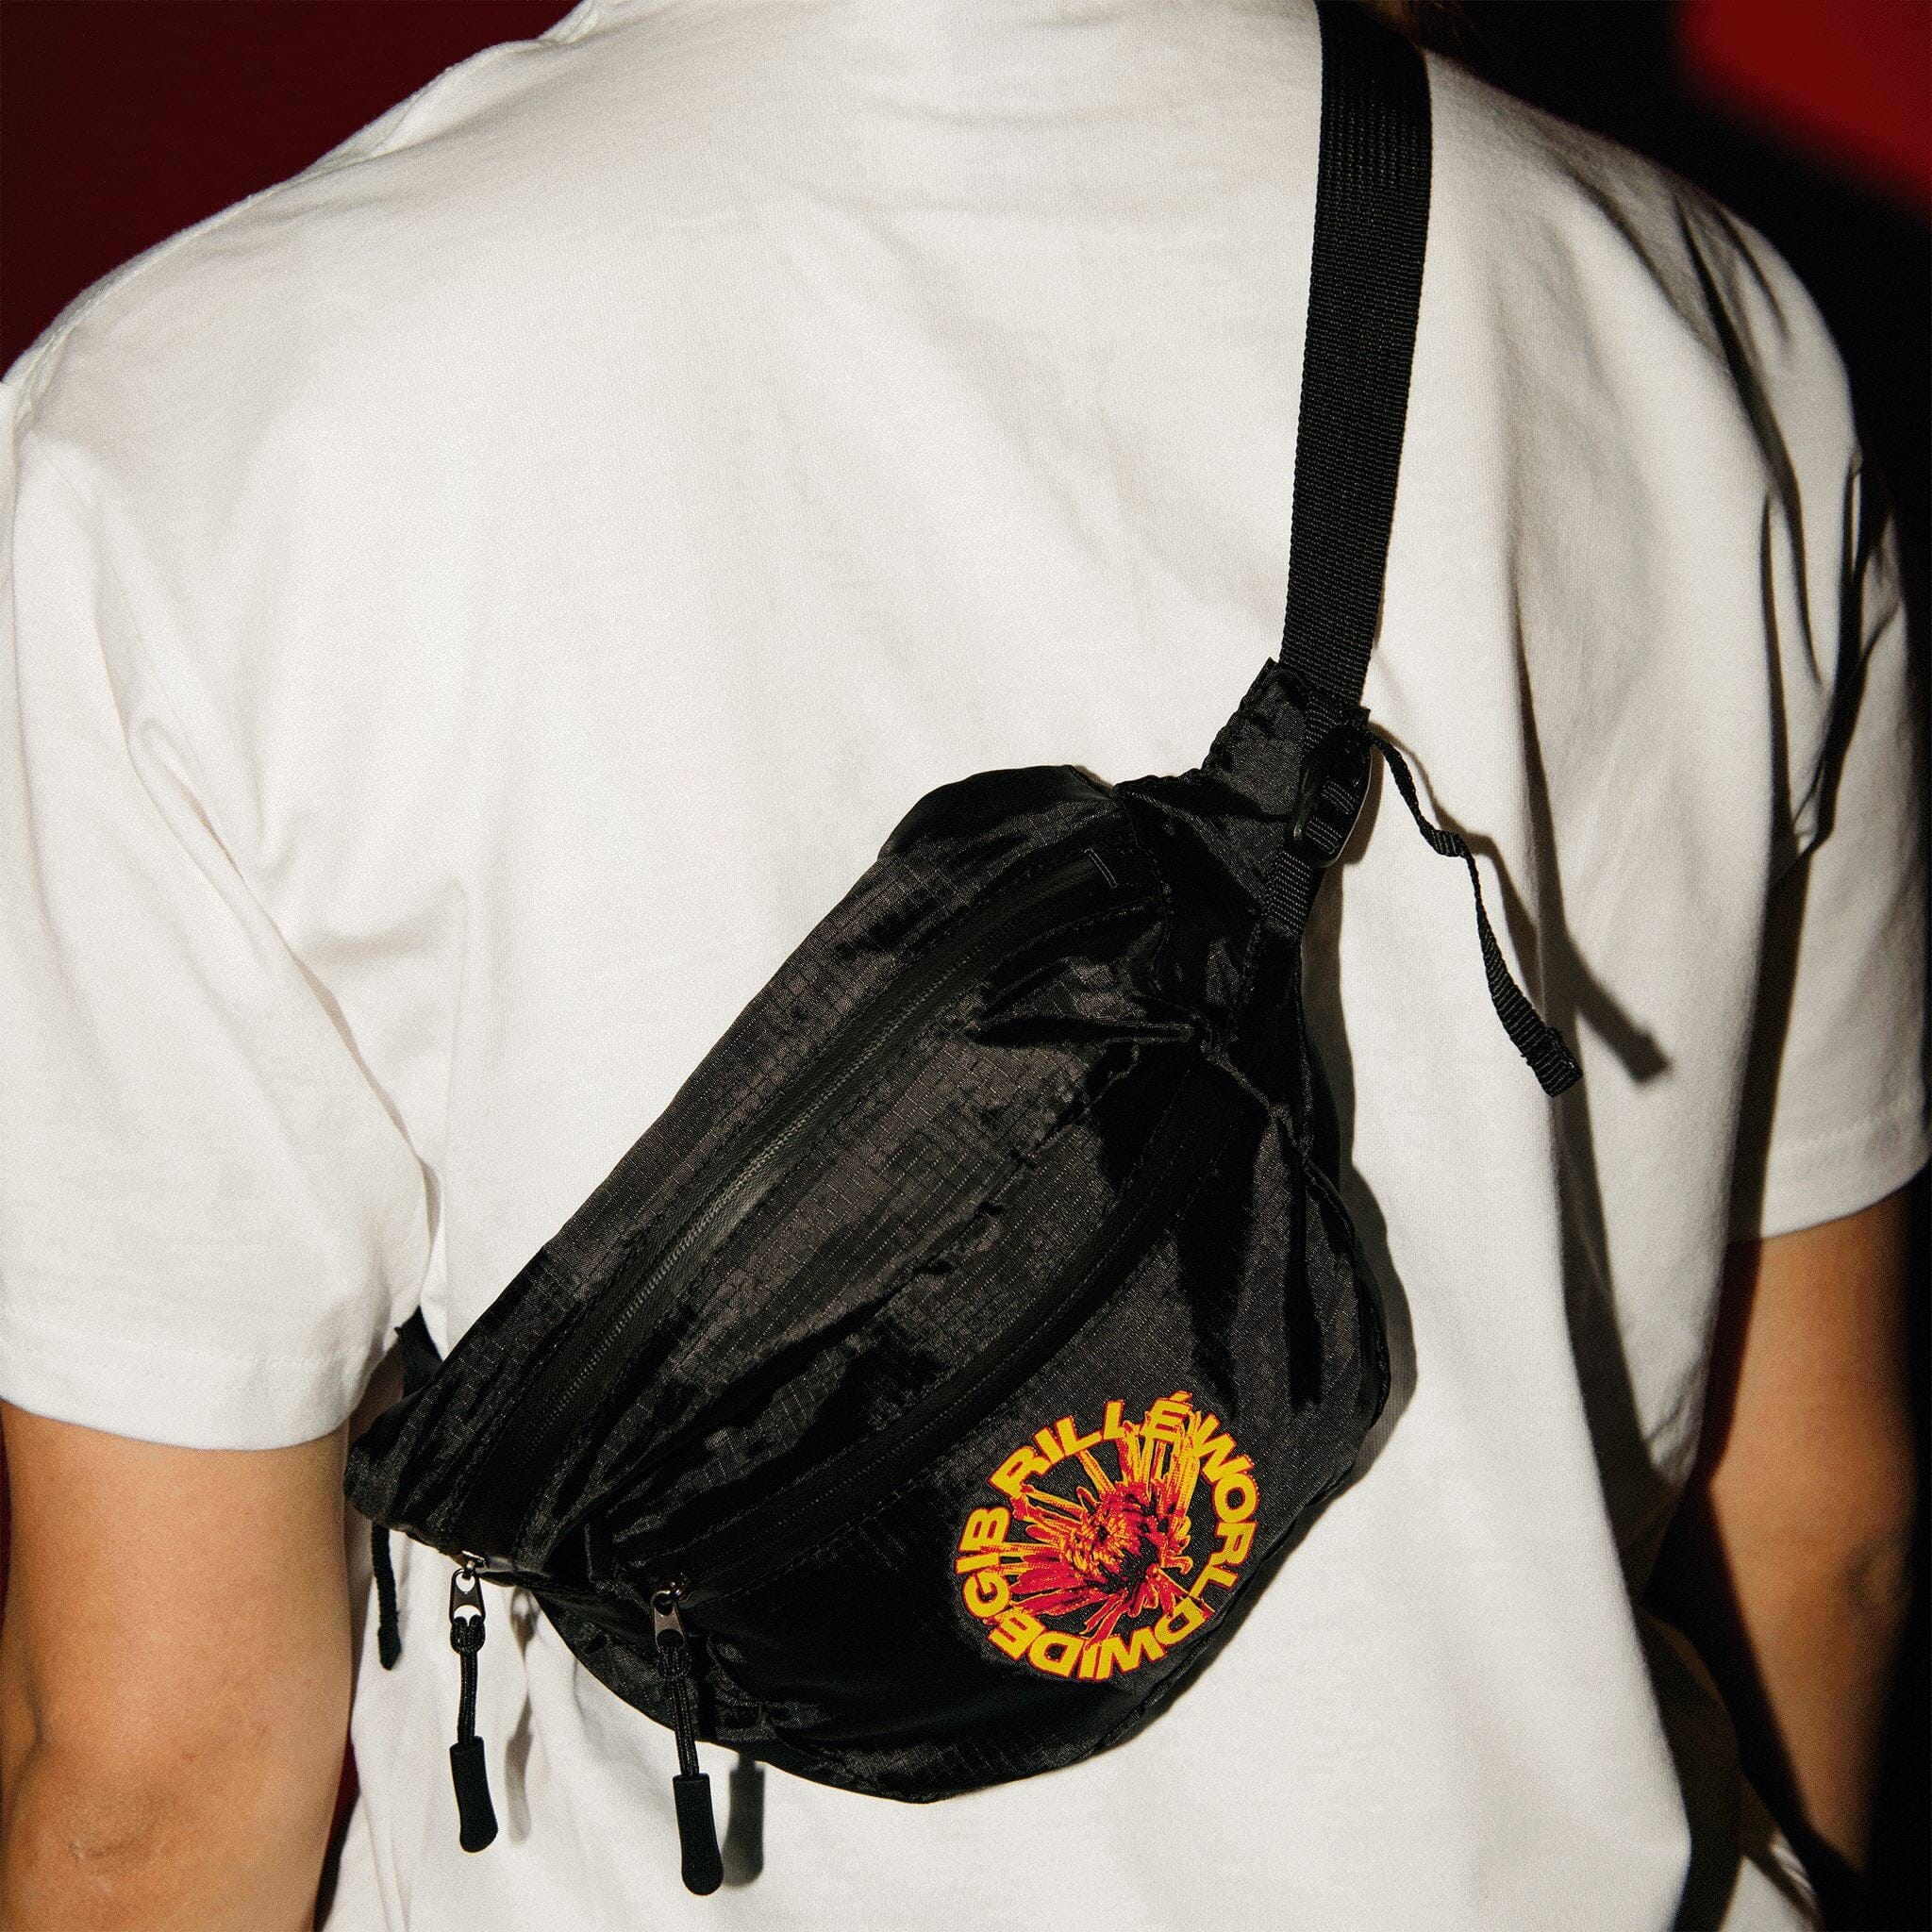 Bauchtasche Gib Rillé black mit Logo getragen auf dem Rücken